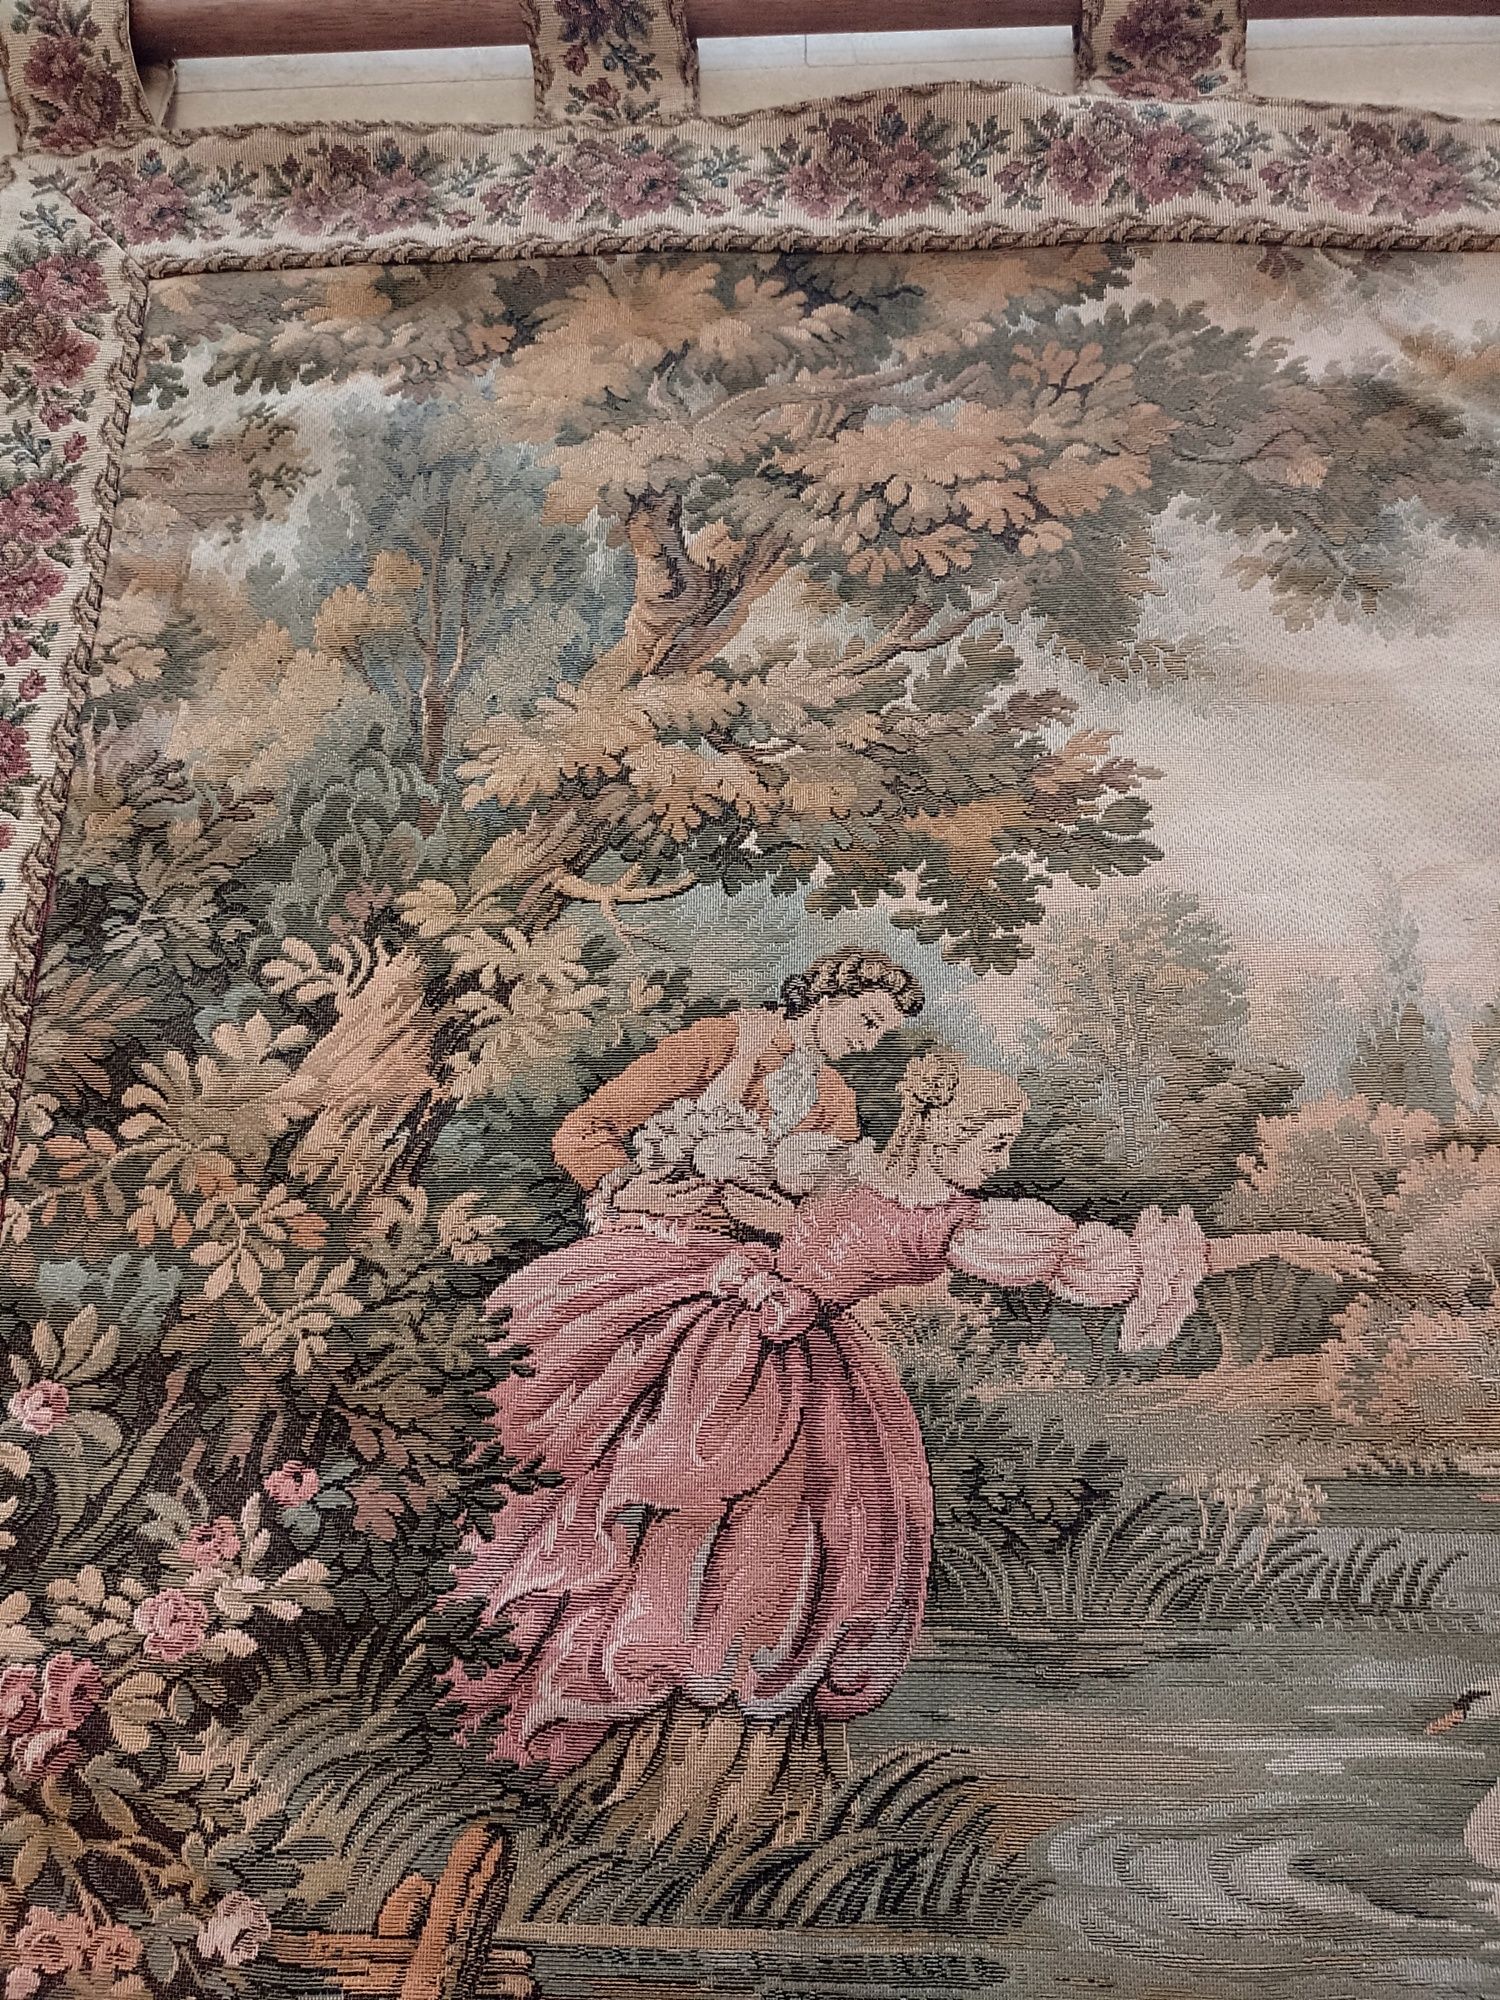 Superbă tapiserie antica franceza lucrata manual scena galanta de epoc